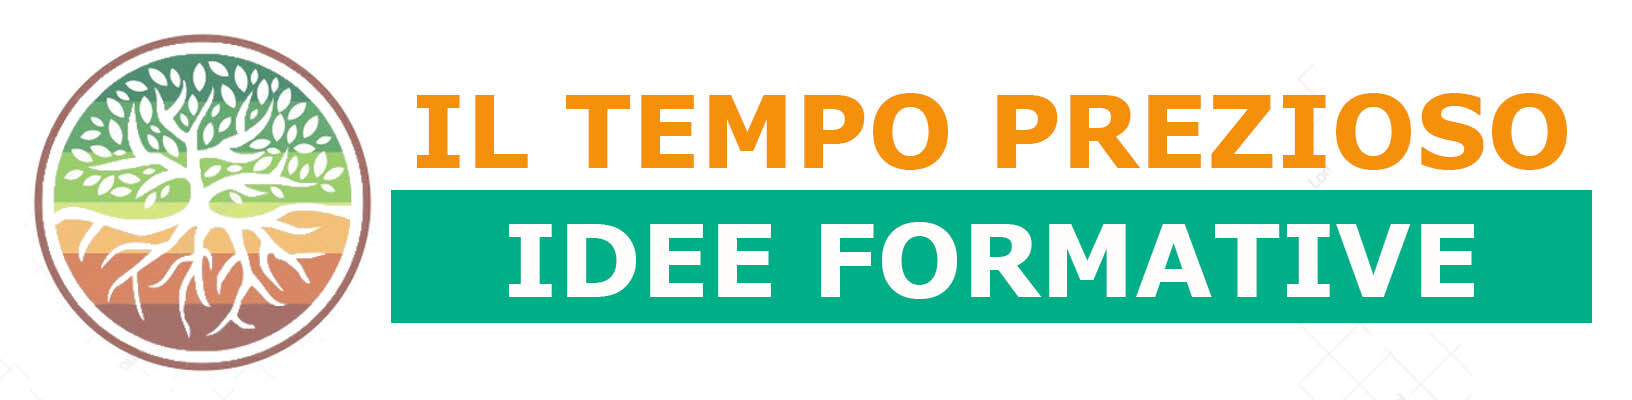 Il Tempo Prezioso Celebrates 10 Years of Innovative Team Building Experiences in Milano